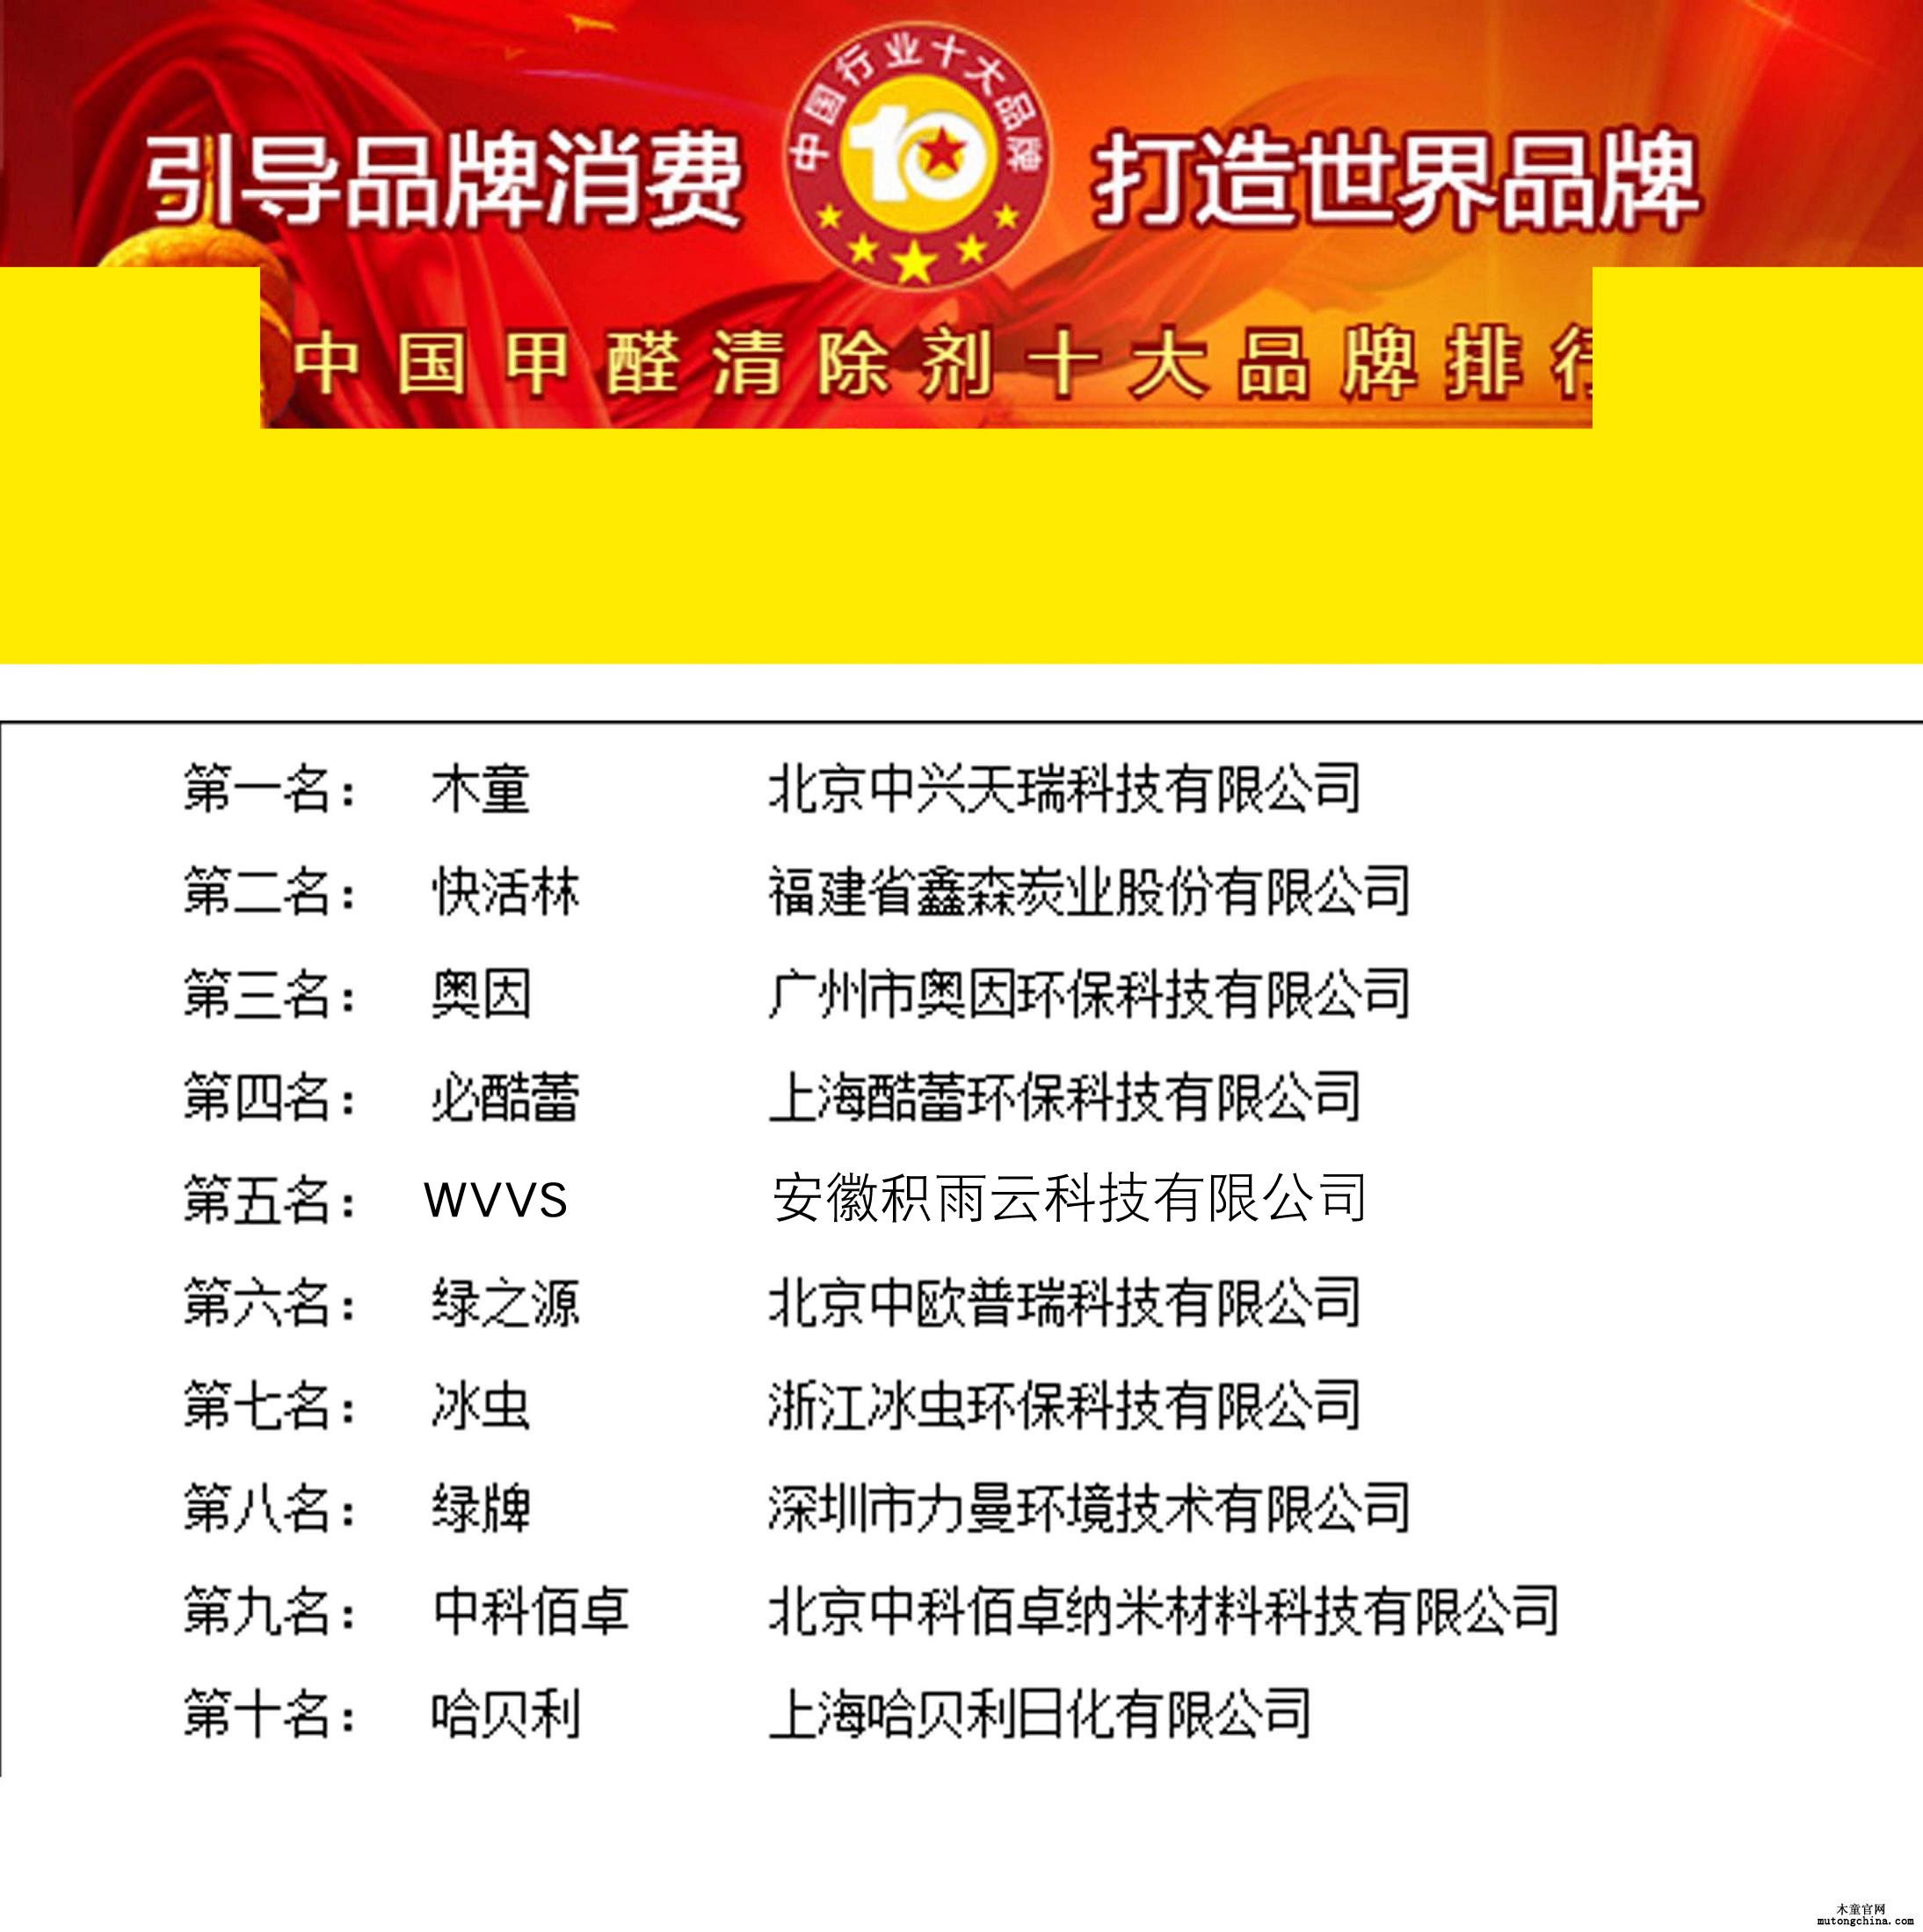 2018年度米乐m6中国甲醛清除剂十大品牌总评榜(图1)